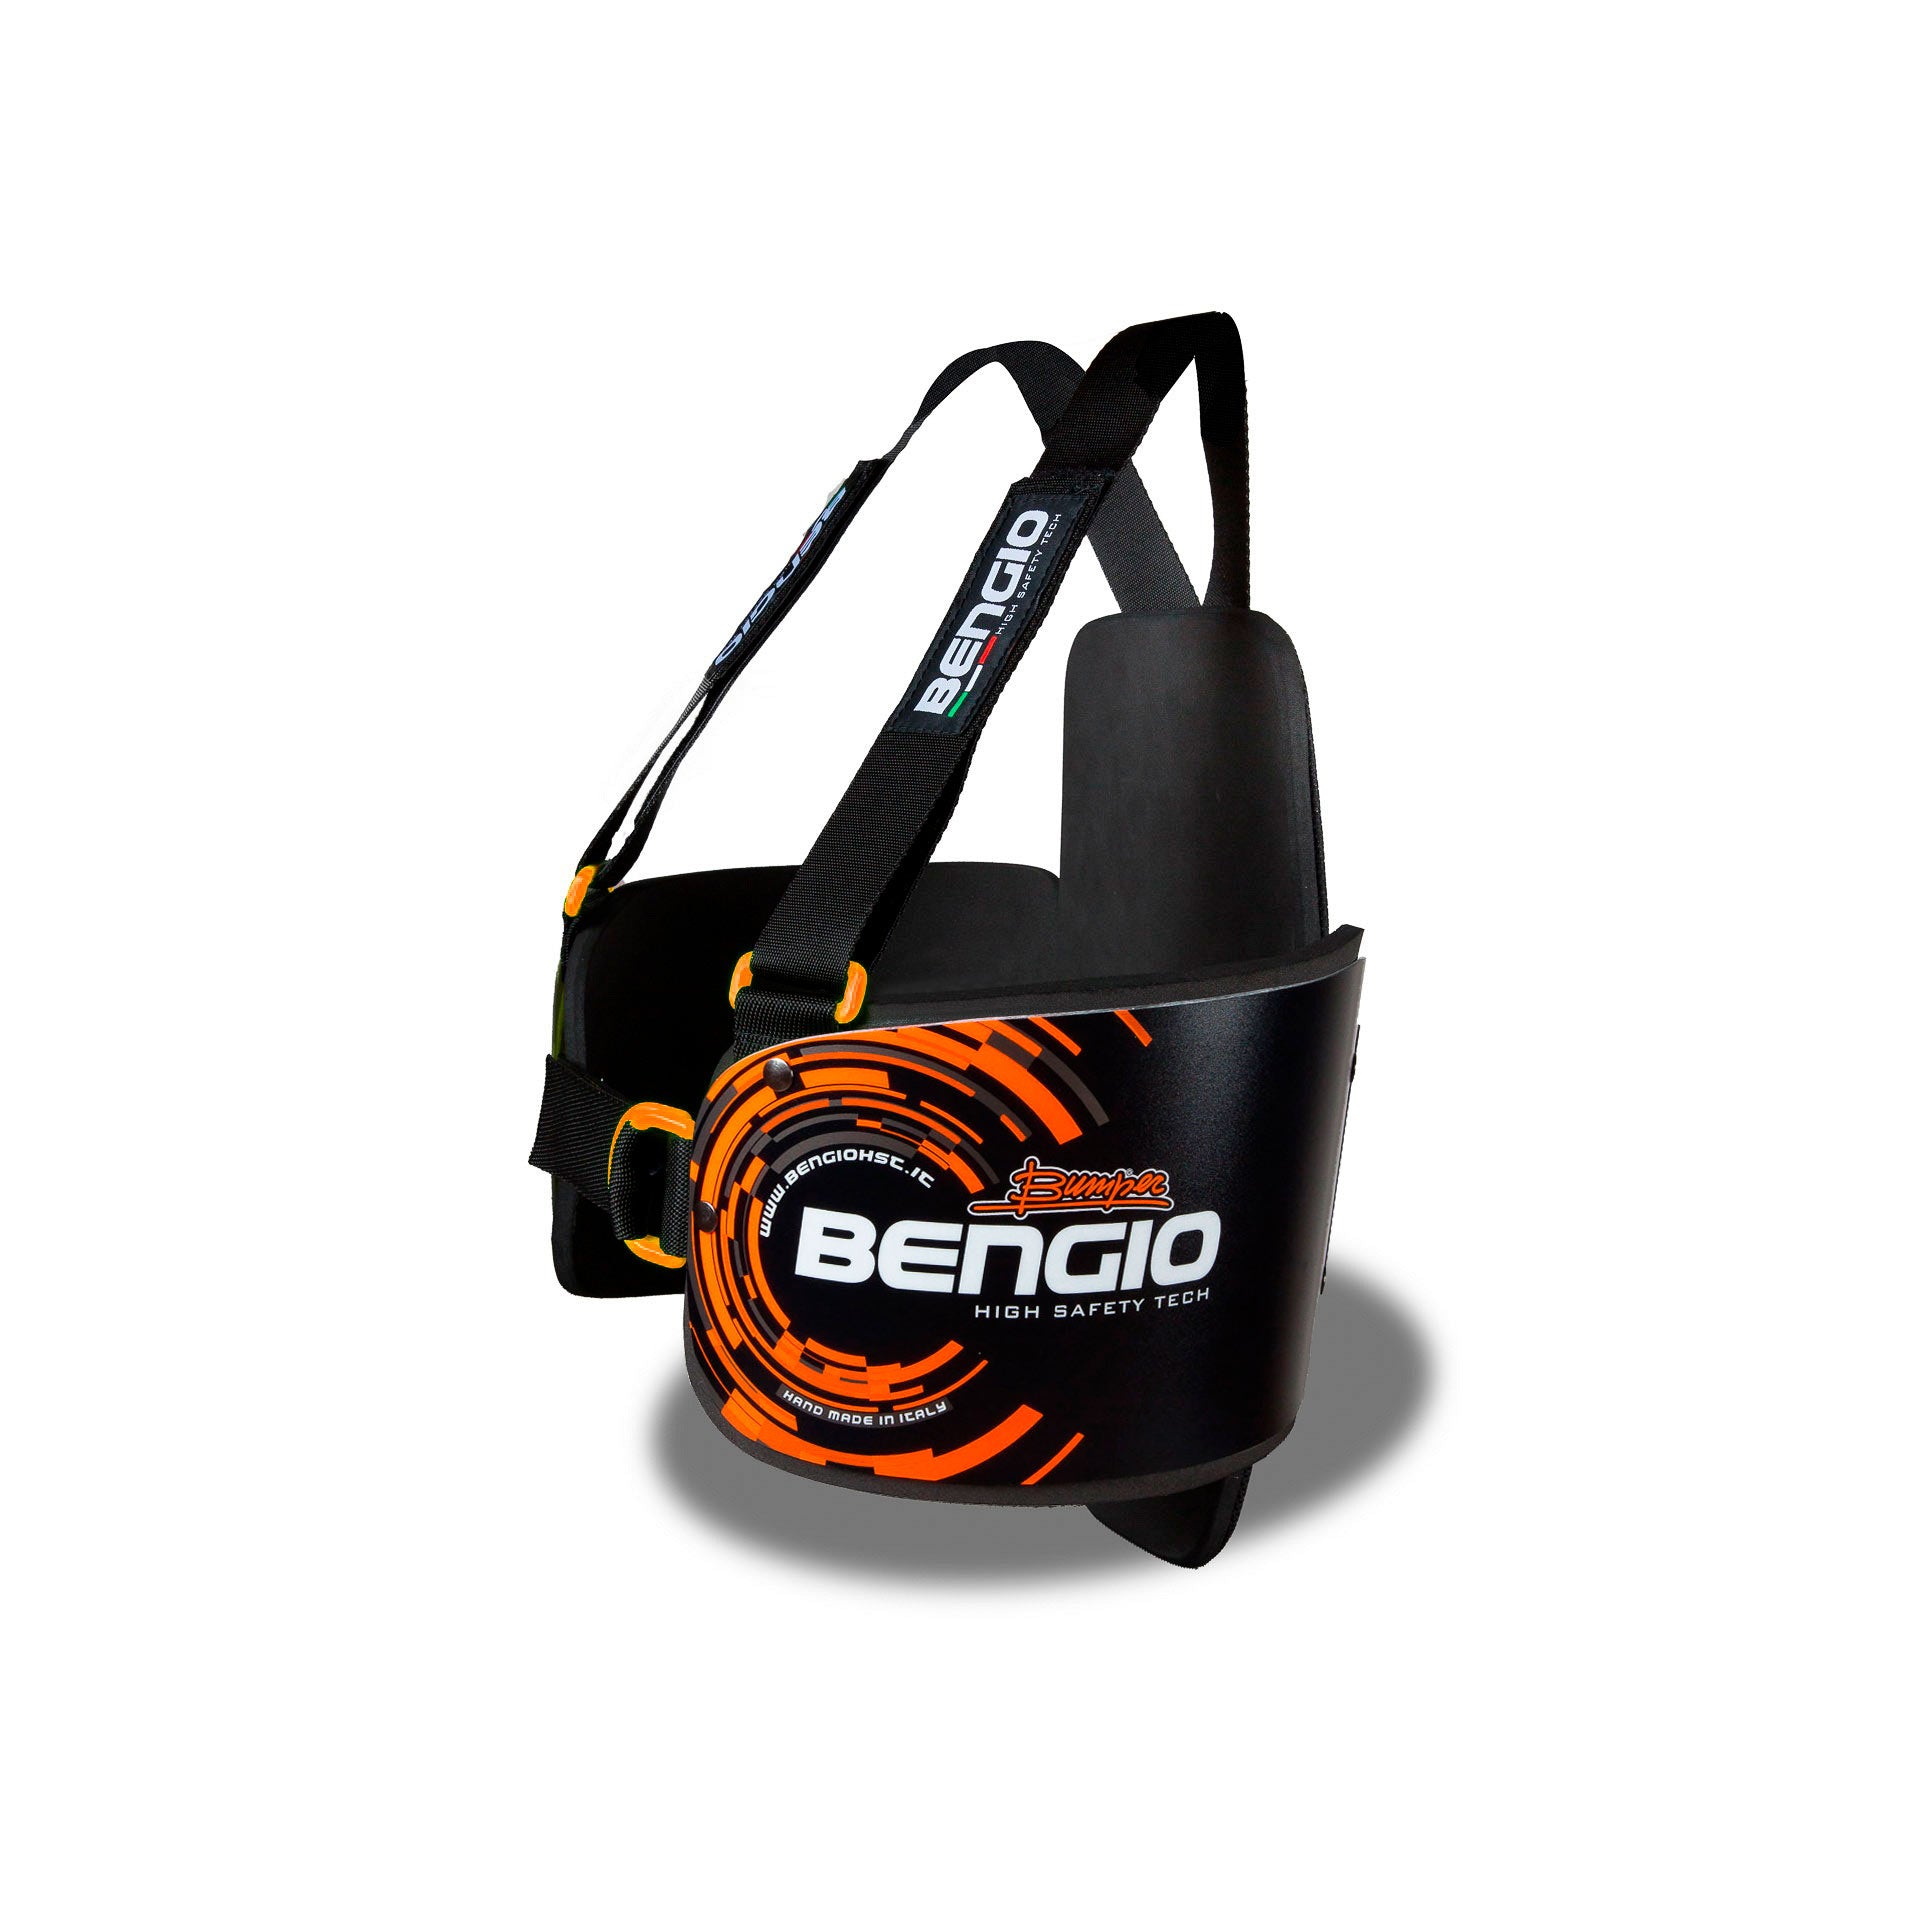 BENGIO STDPLSMBO BUMPER Plus Захист ребер для картингу, чорний/помаранчевий, розмір S/M Photo-1 